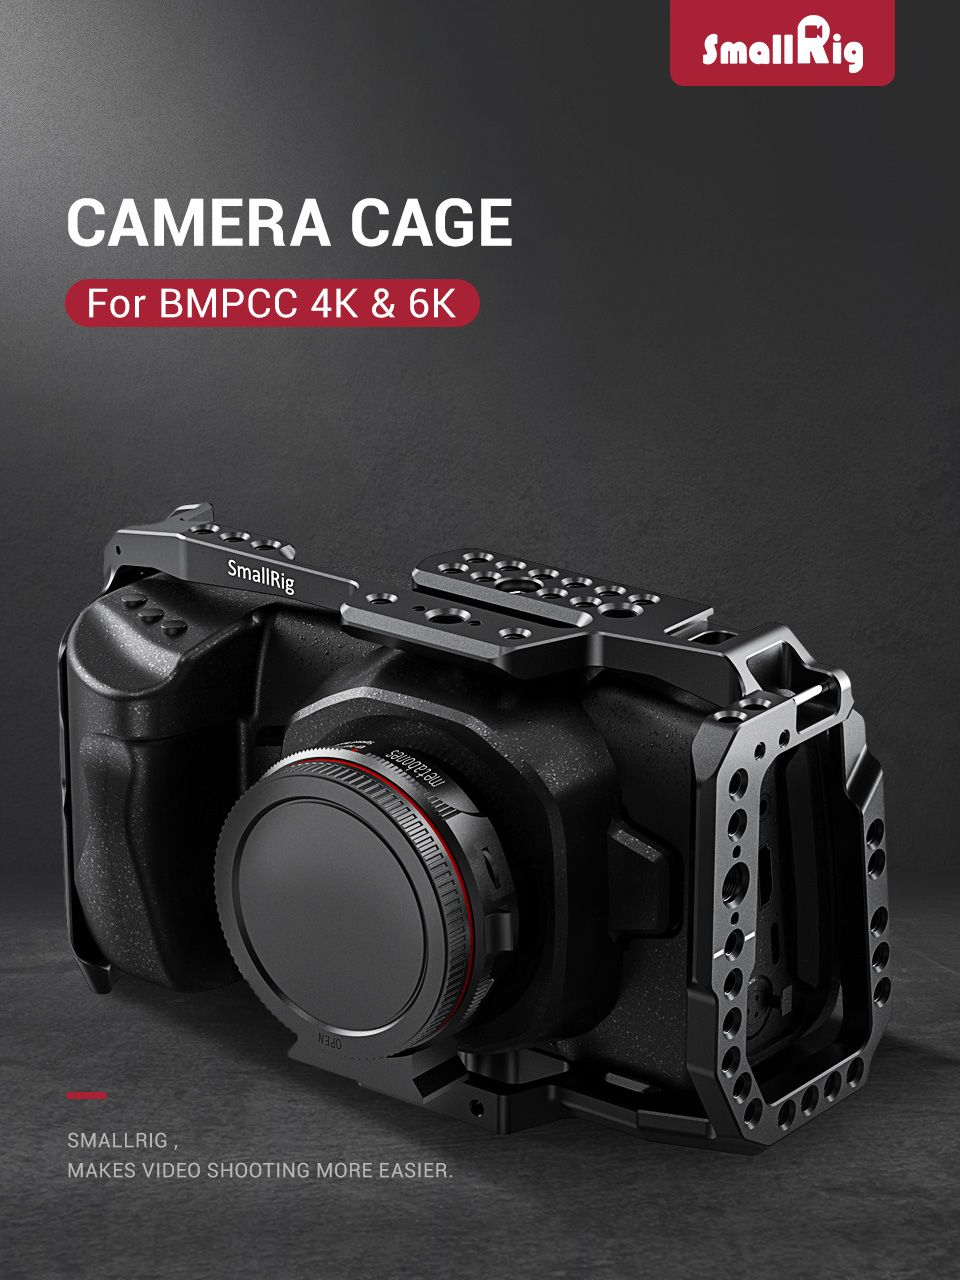 SmallRig-2203B-BMPCC-4K-6K-Camera-Full-Cage-for-BMPCC-Pocket-Cinema-Camera-4K-6K-Vlog-Video-Recordin-1726626